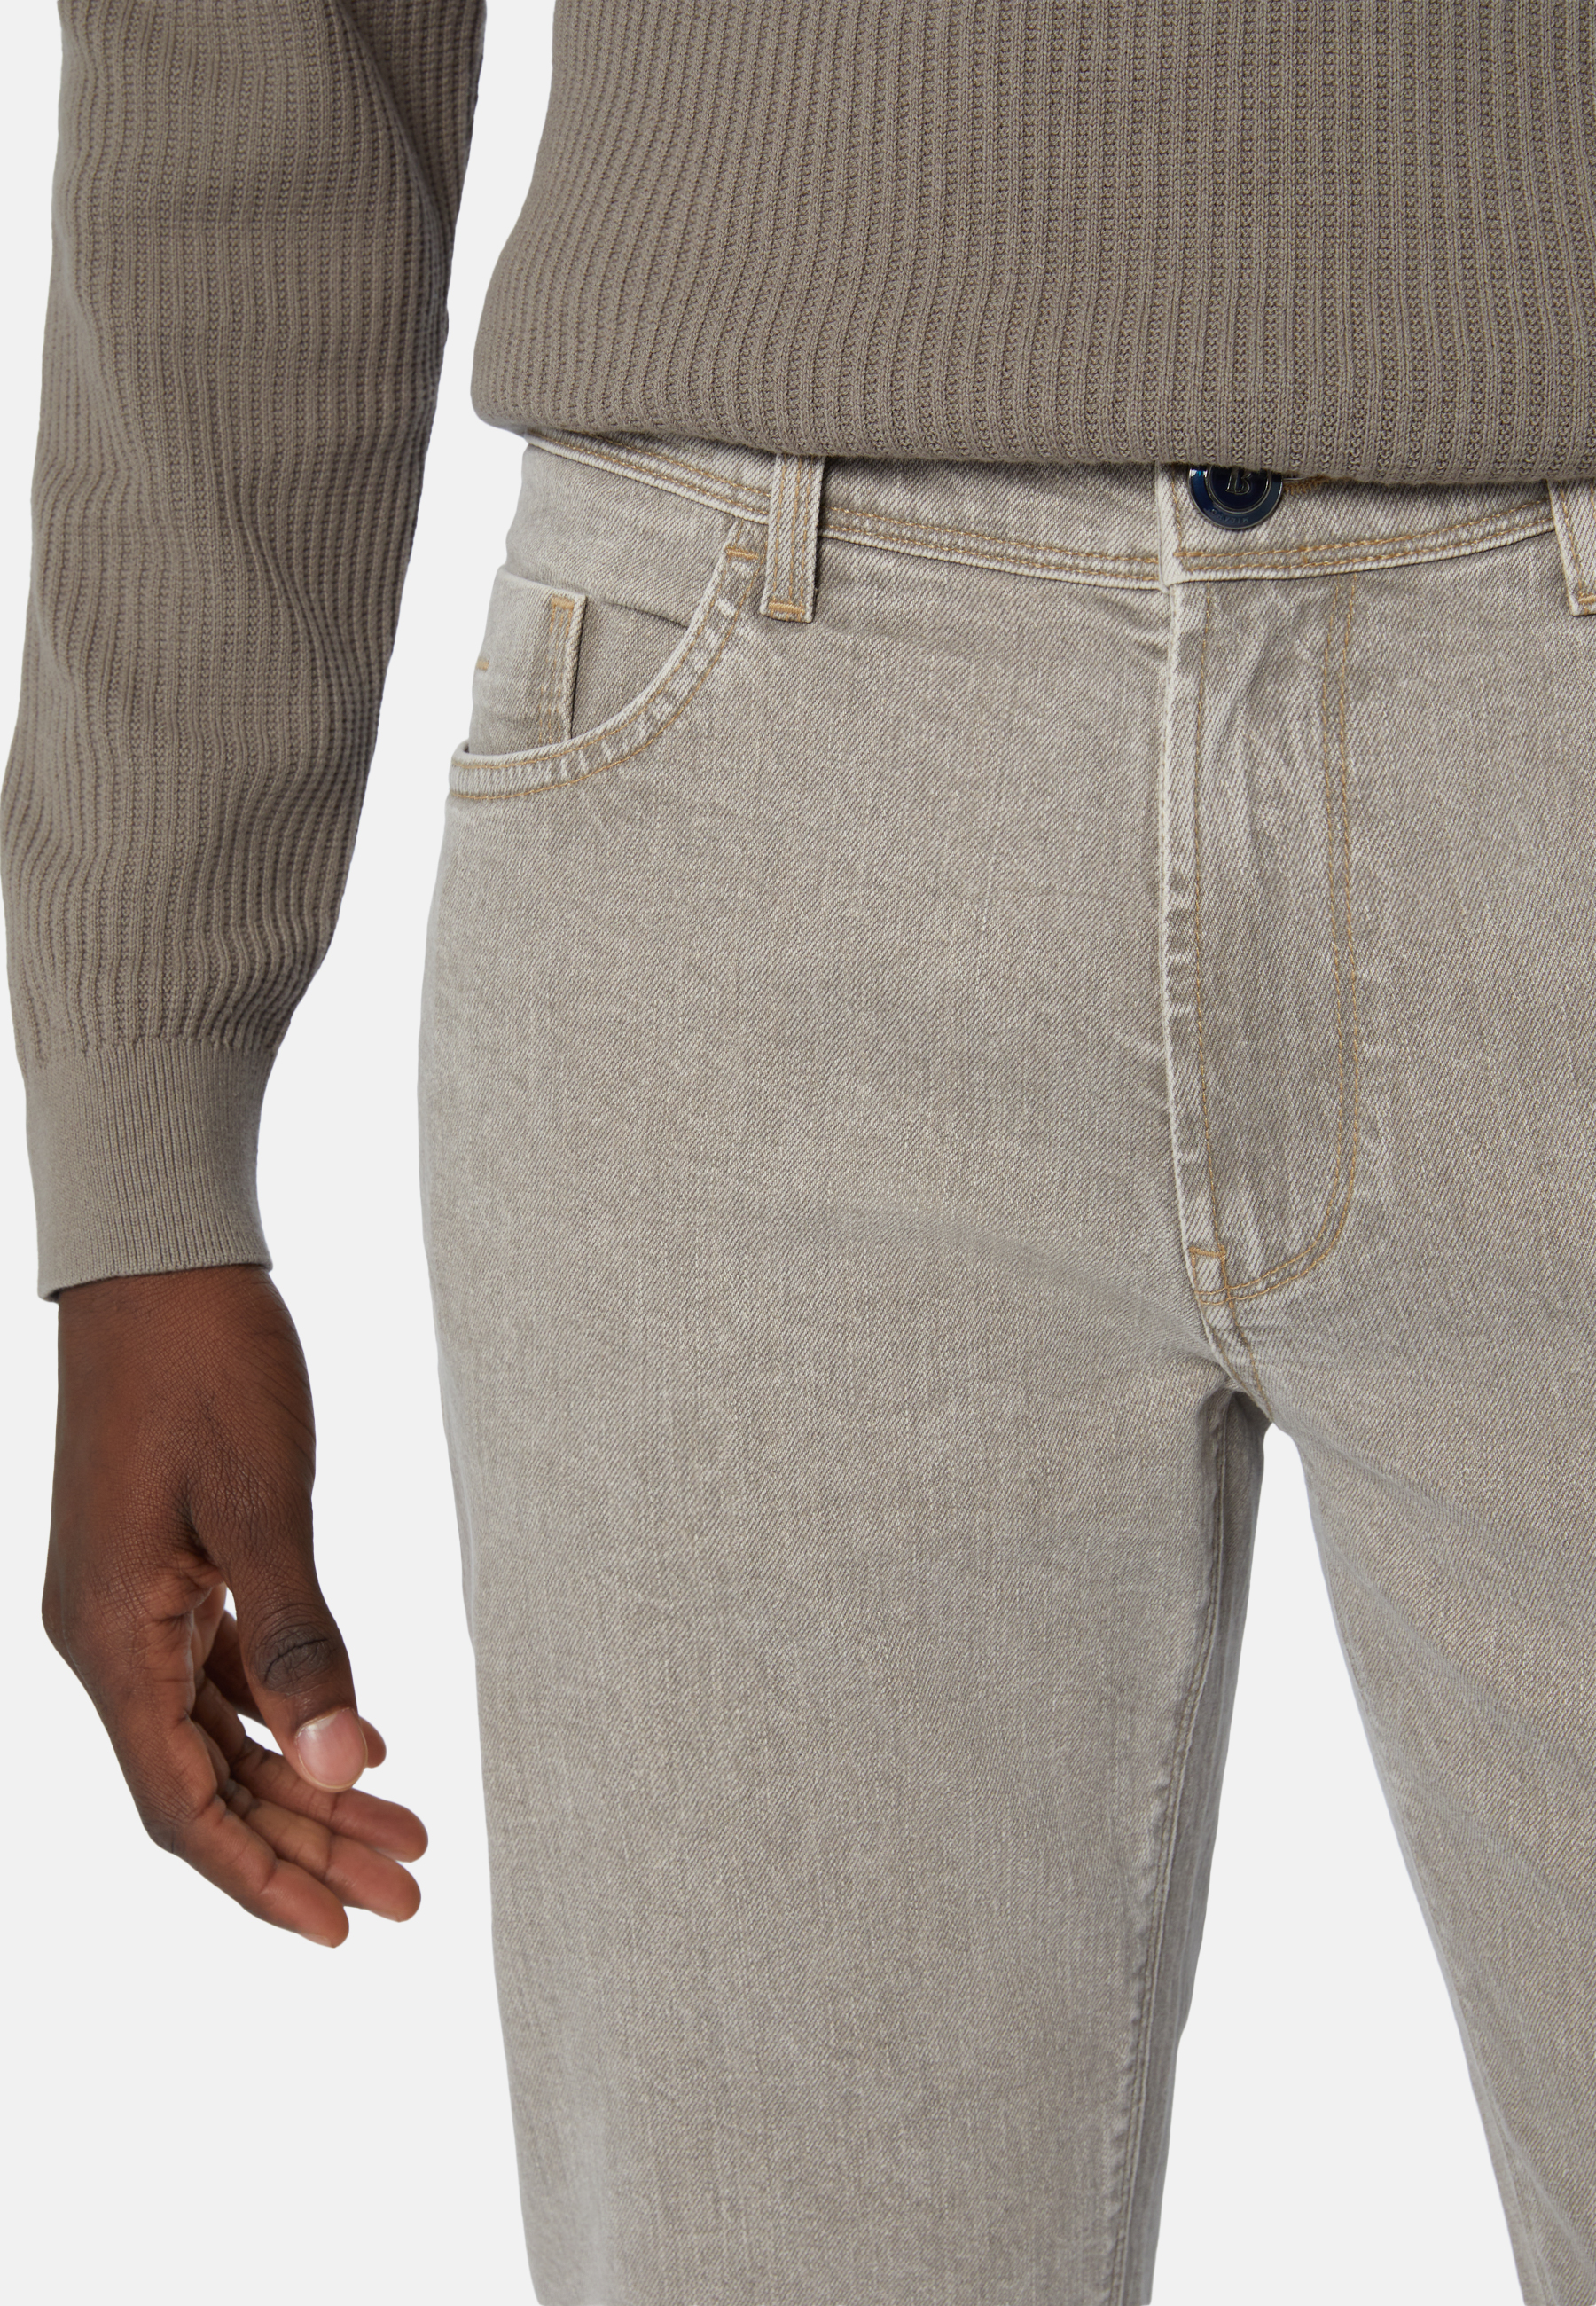 Grey Stretch Denim Jeans